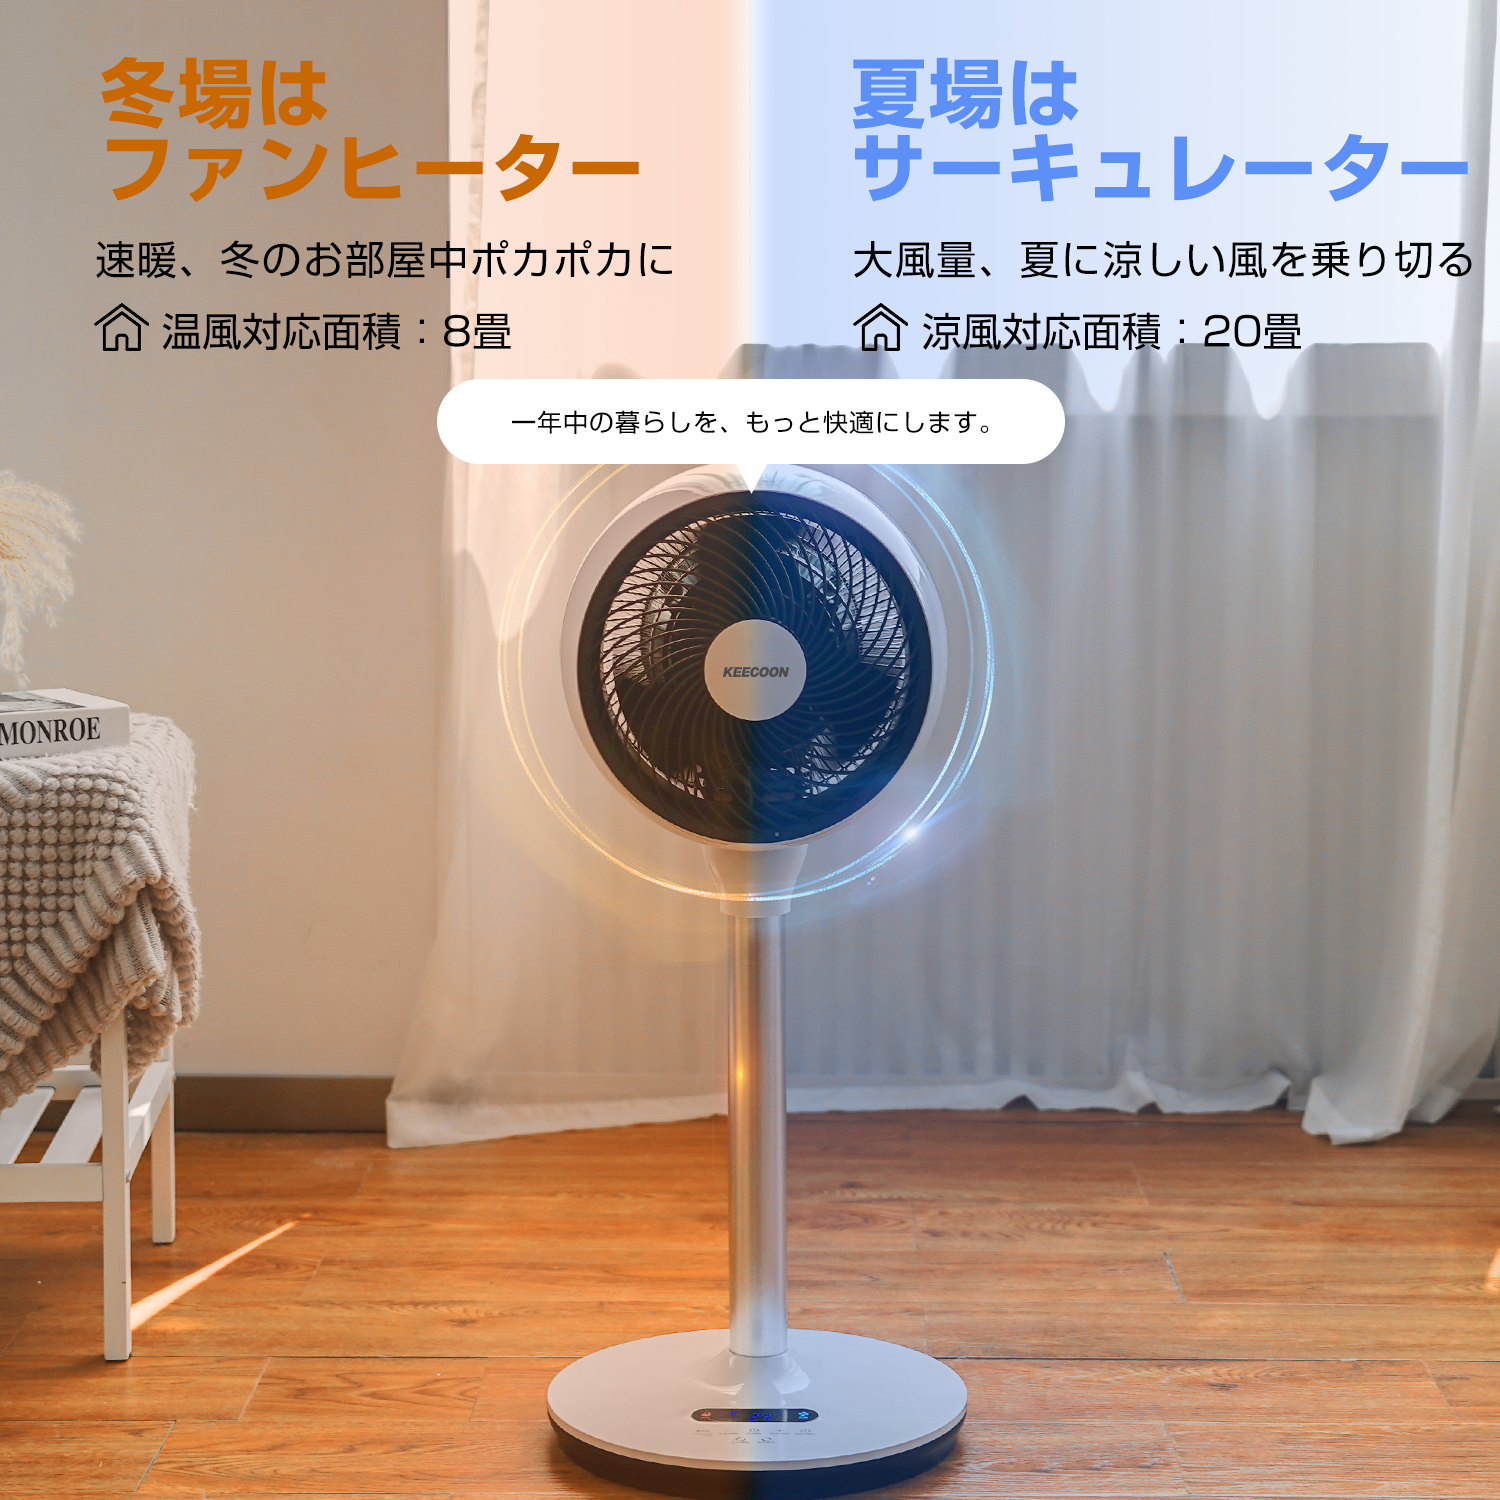 2秒急速昇温⭐️セラミックヒーター 電気ストーブ 暖房器具 ストーブ 小型